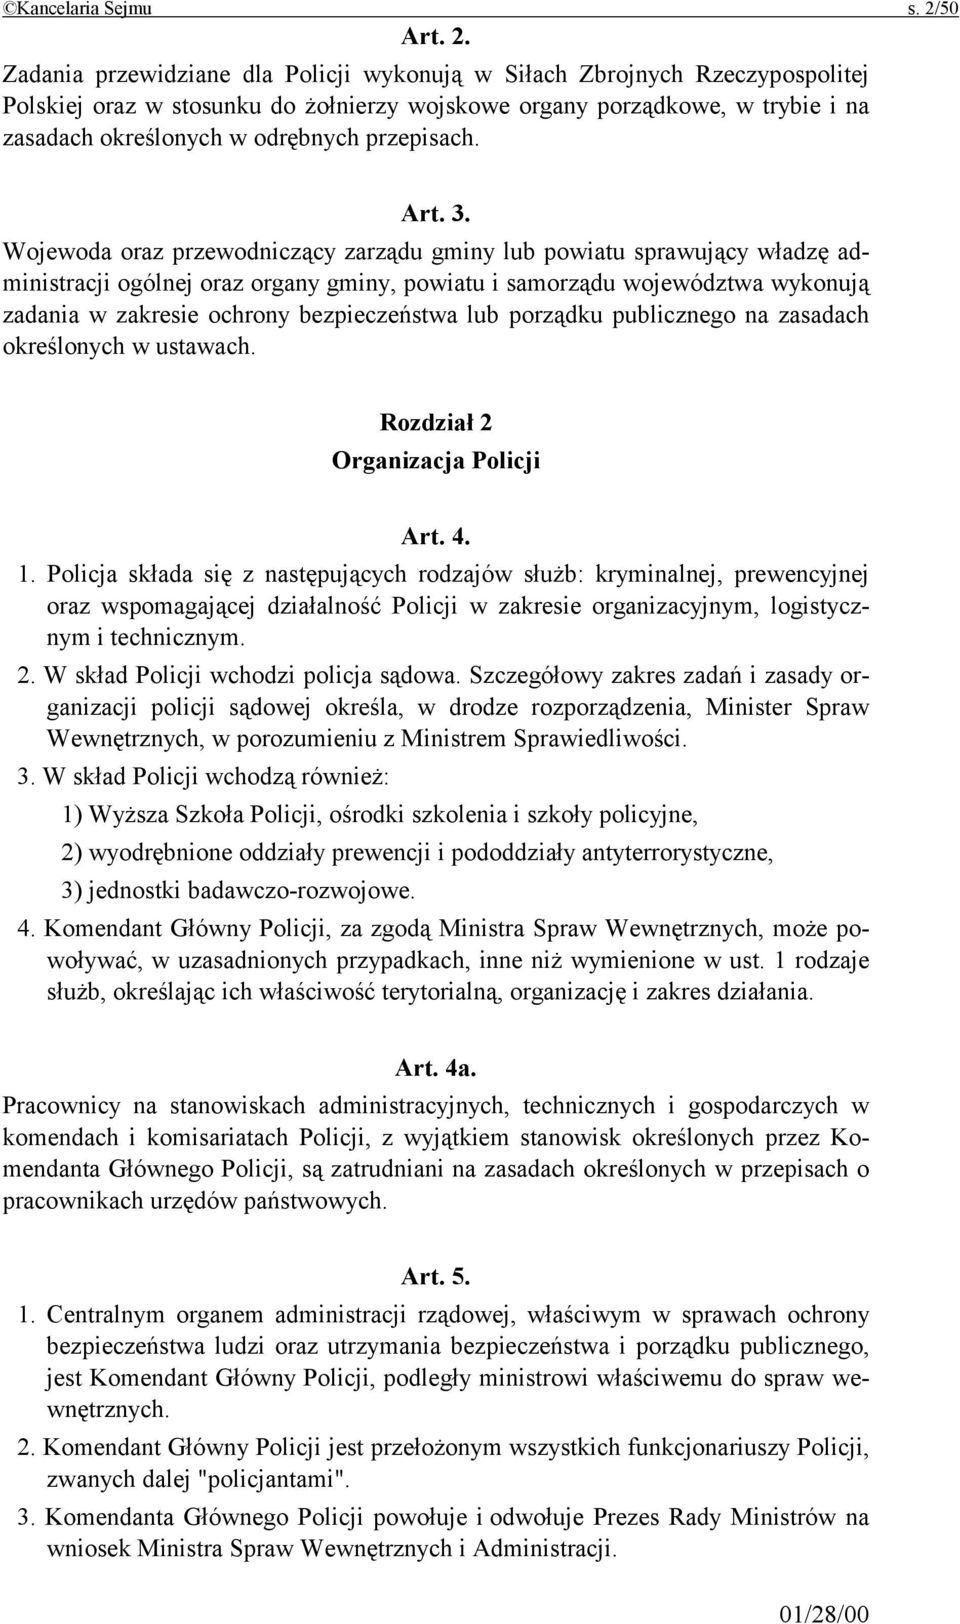 Zadania przewidziane dla Policji wykonują w Siłach Zbrojnych Rzeczypospolitej Polskiej oraz w stosunku do żołnierzy wojskowe organy porządkowe, w trybie i na zasadach określonych w odrębnych